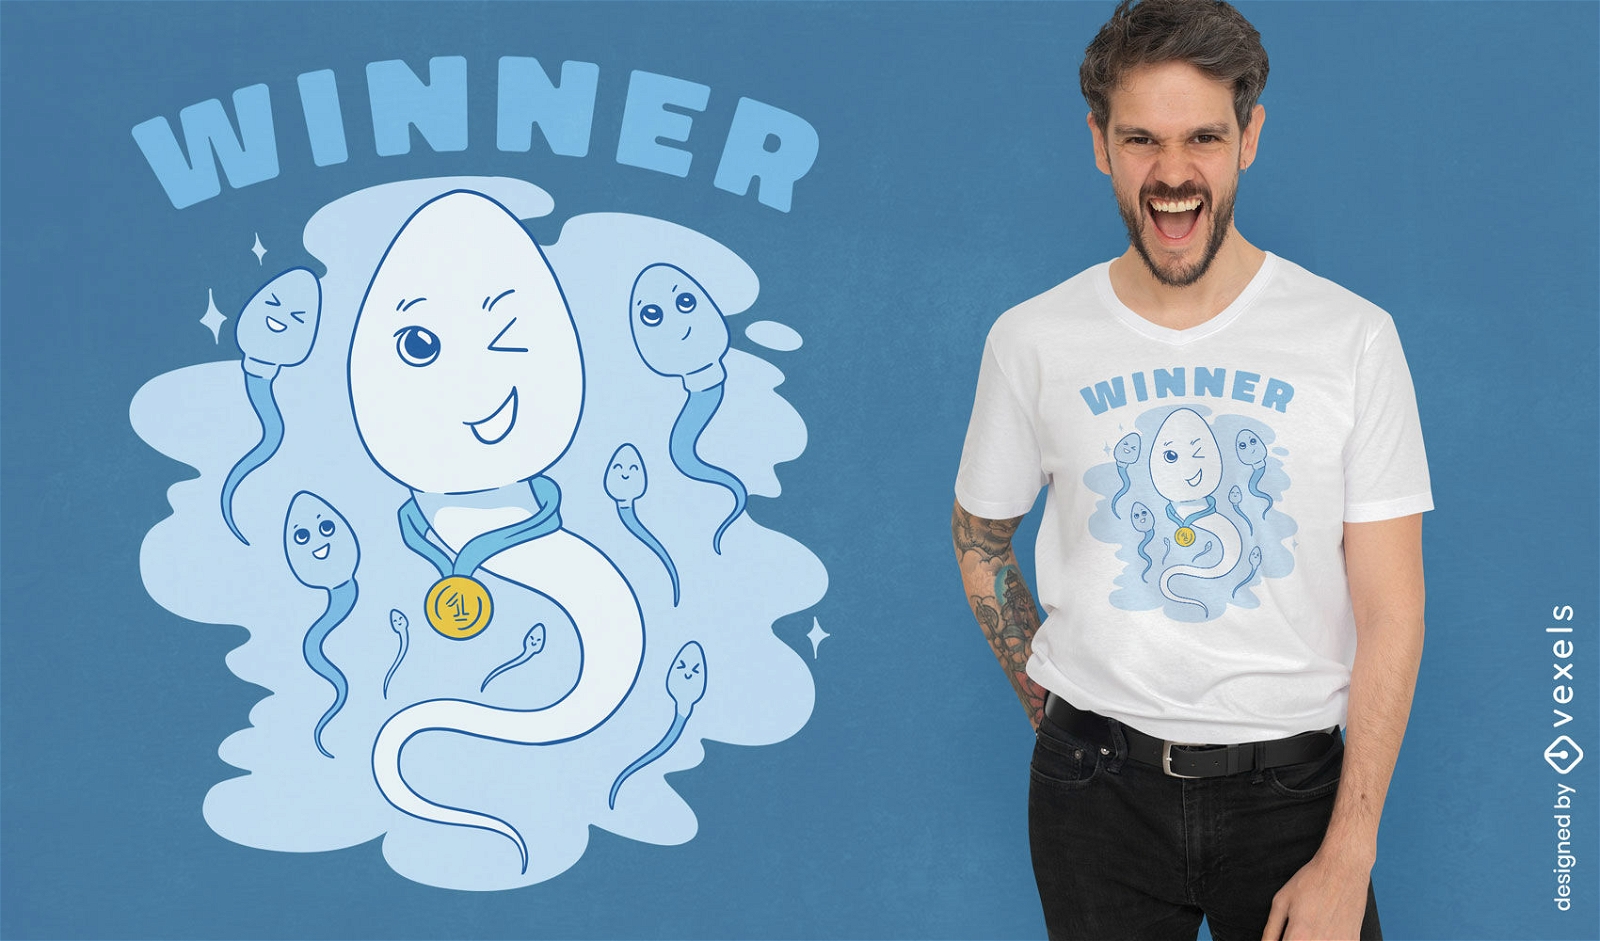 Winner sperm t-shirt desin